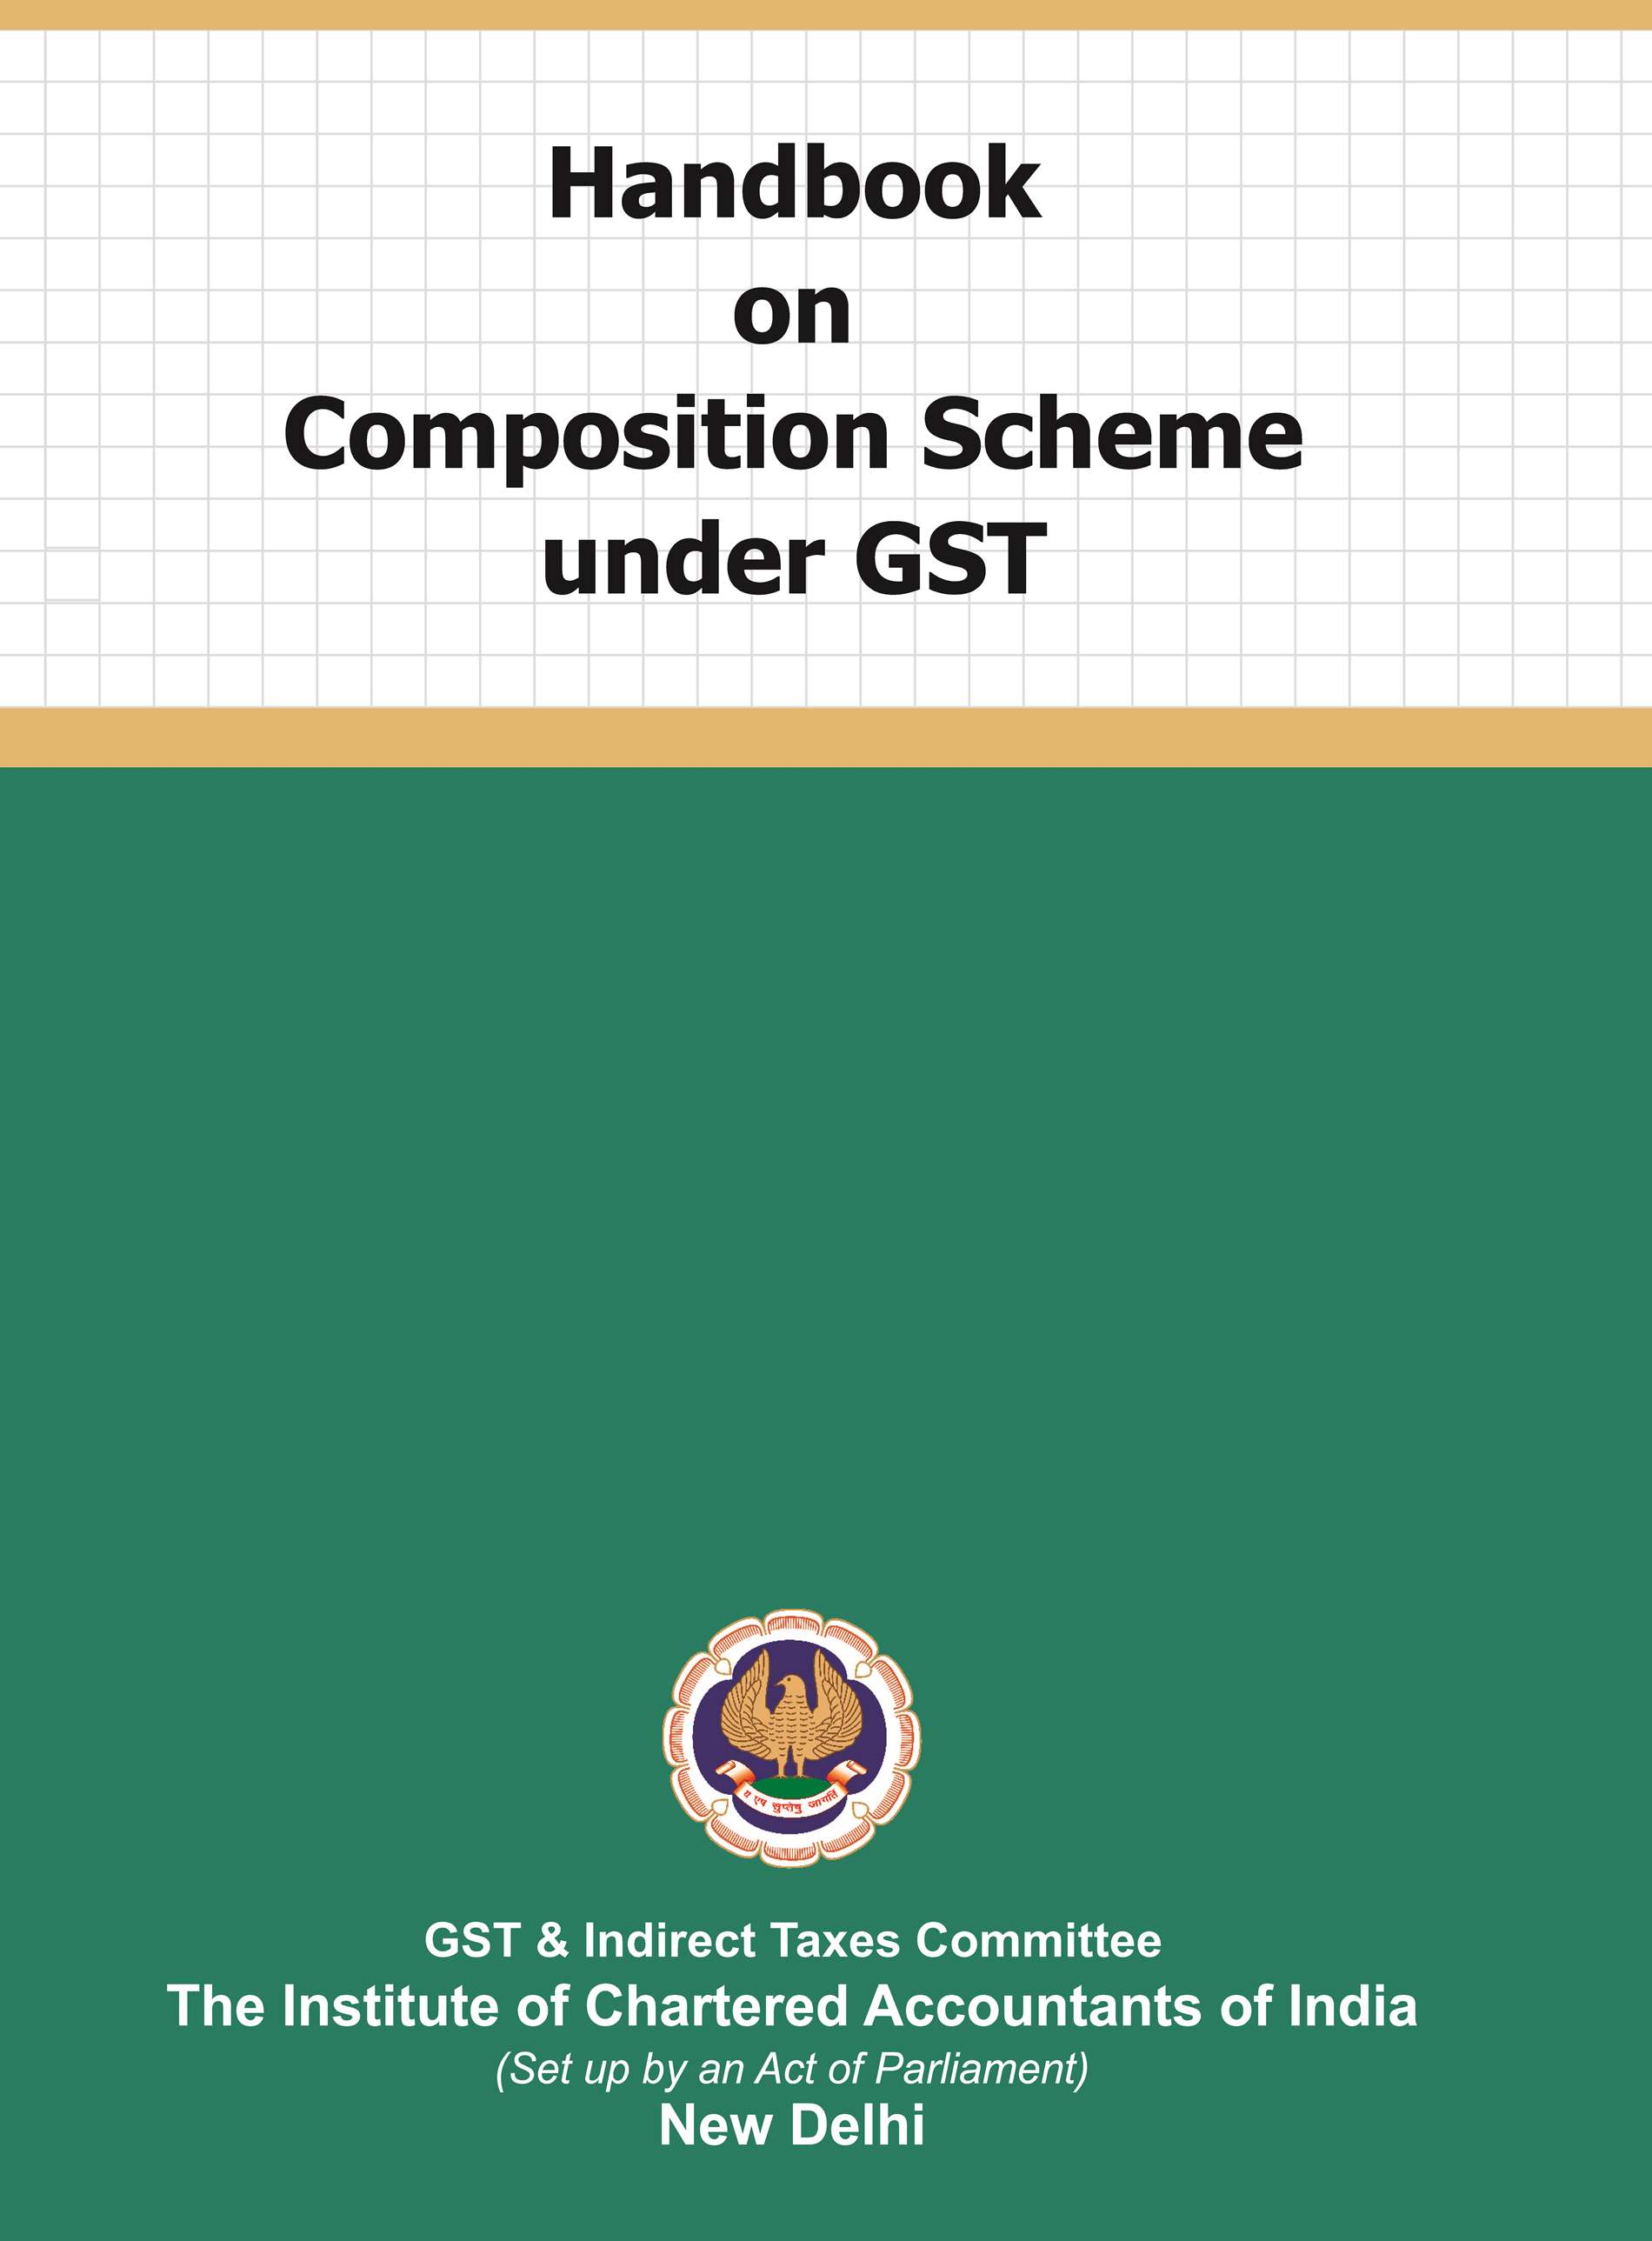 Handbook on Composition Scheme under GST (August, 2022)